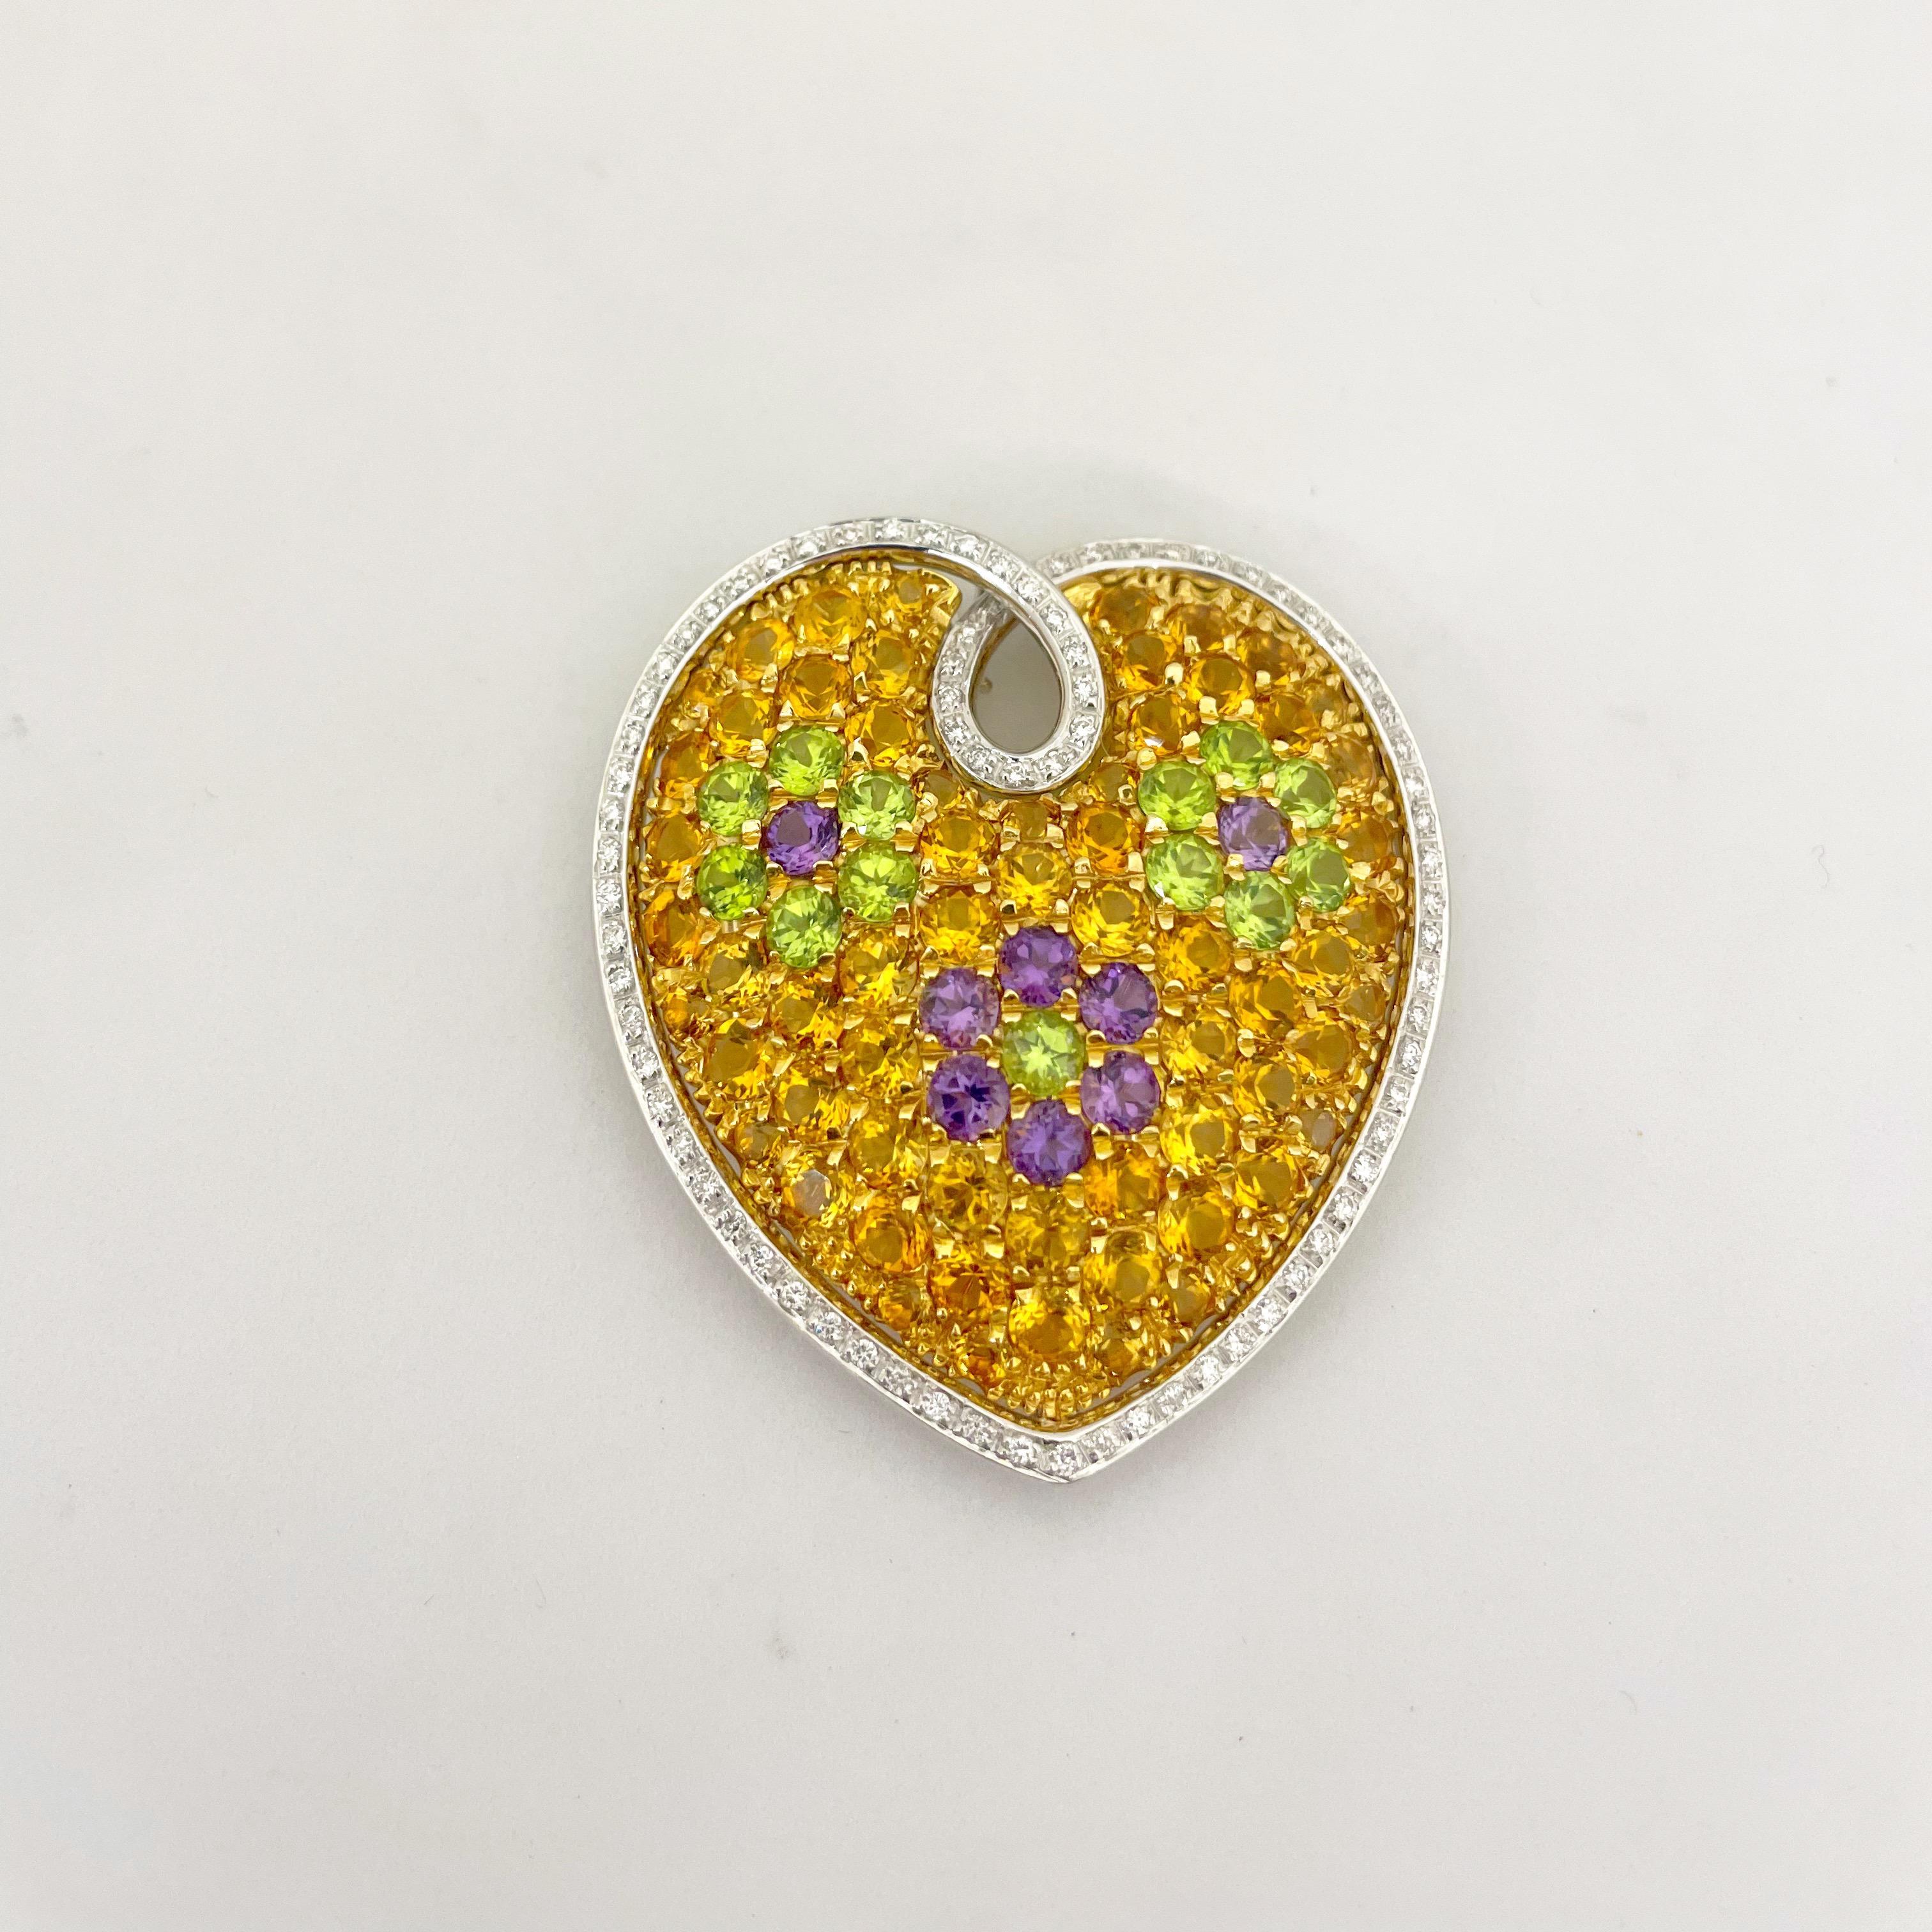 Cette charmante broche en diamants en forme de cœur gonflé de Cellini Jewelers NYC,  est composé de péridot vert, d'améthyste violette et de citrine orange, une combinaison de couleurs tout à fait unique et magnifique. Les pierres sont serties en or